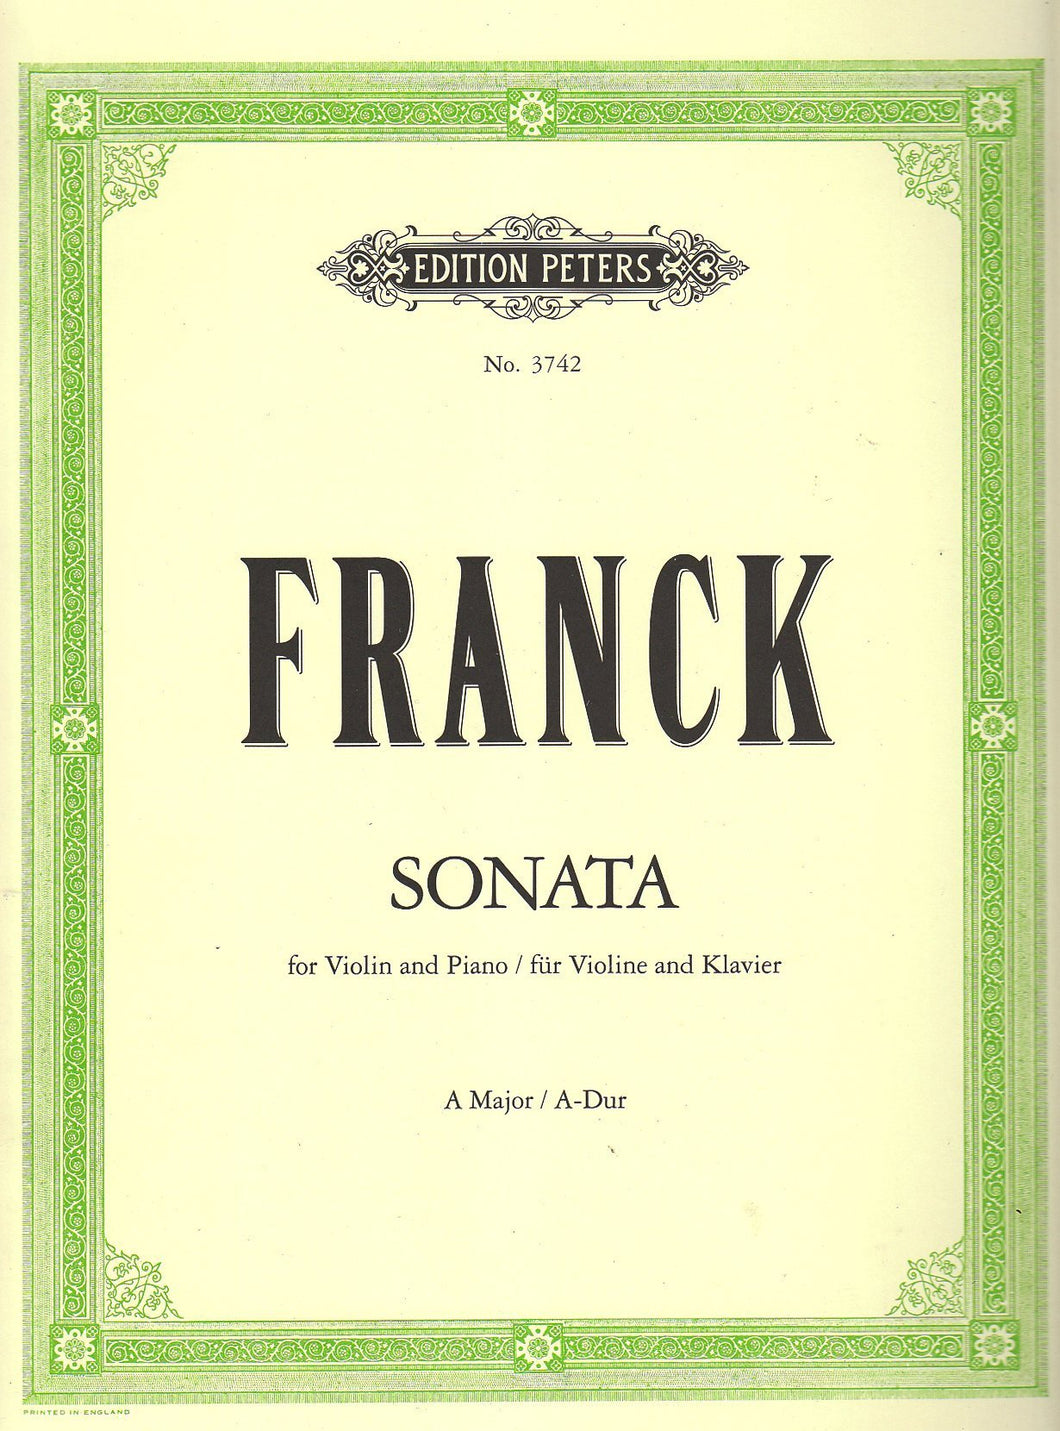 César Franck: Sonata in A